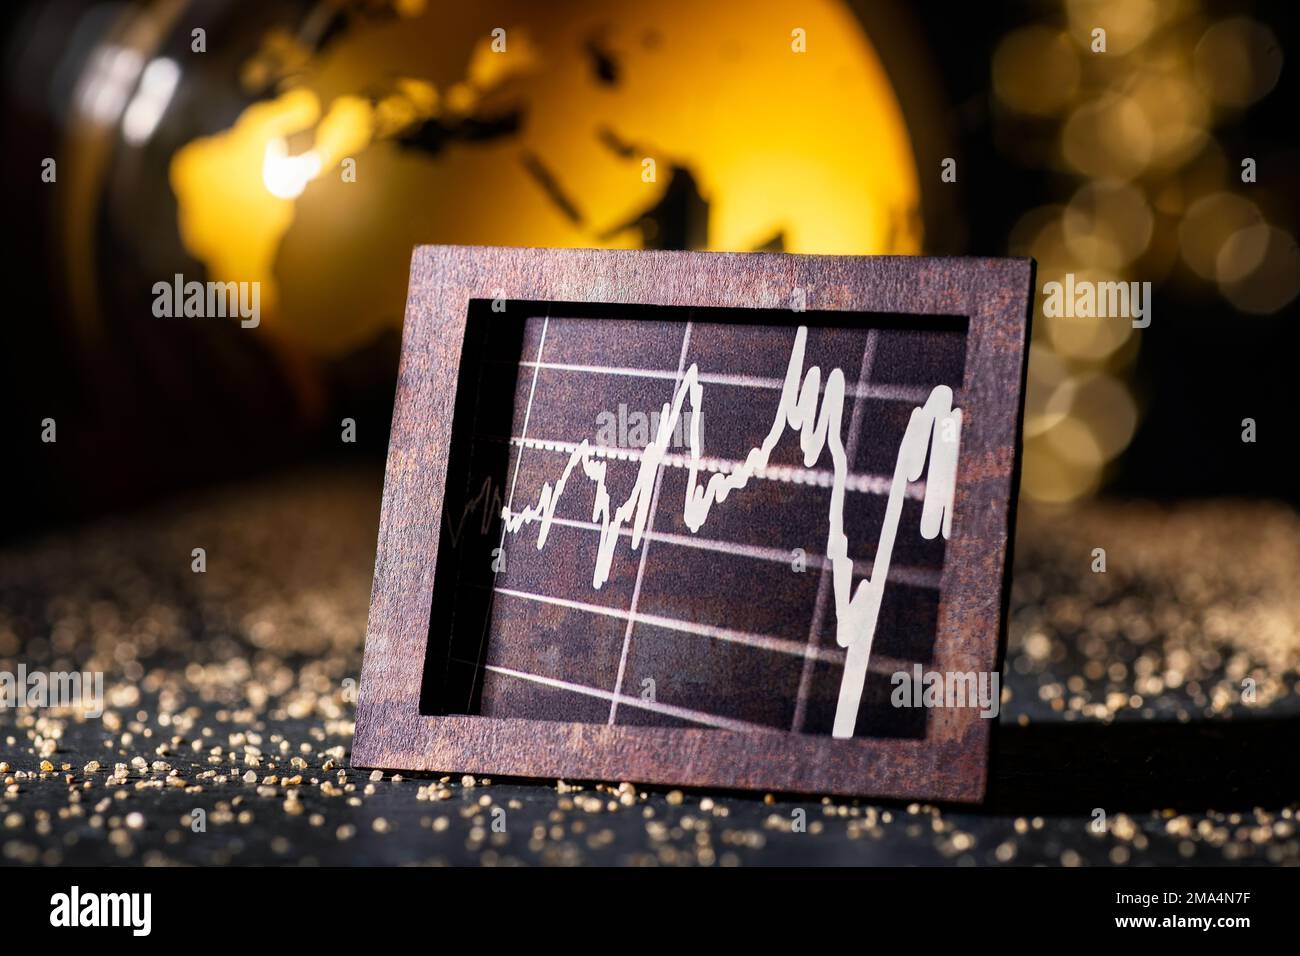 Economia e finanza internazionali. Grafica in vecchia cornice metallica di fronte al globo dorato. Foto Stock